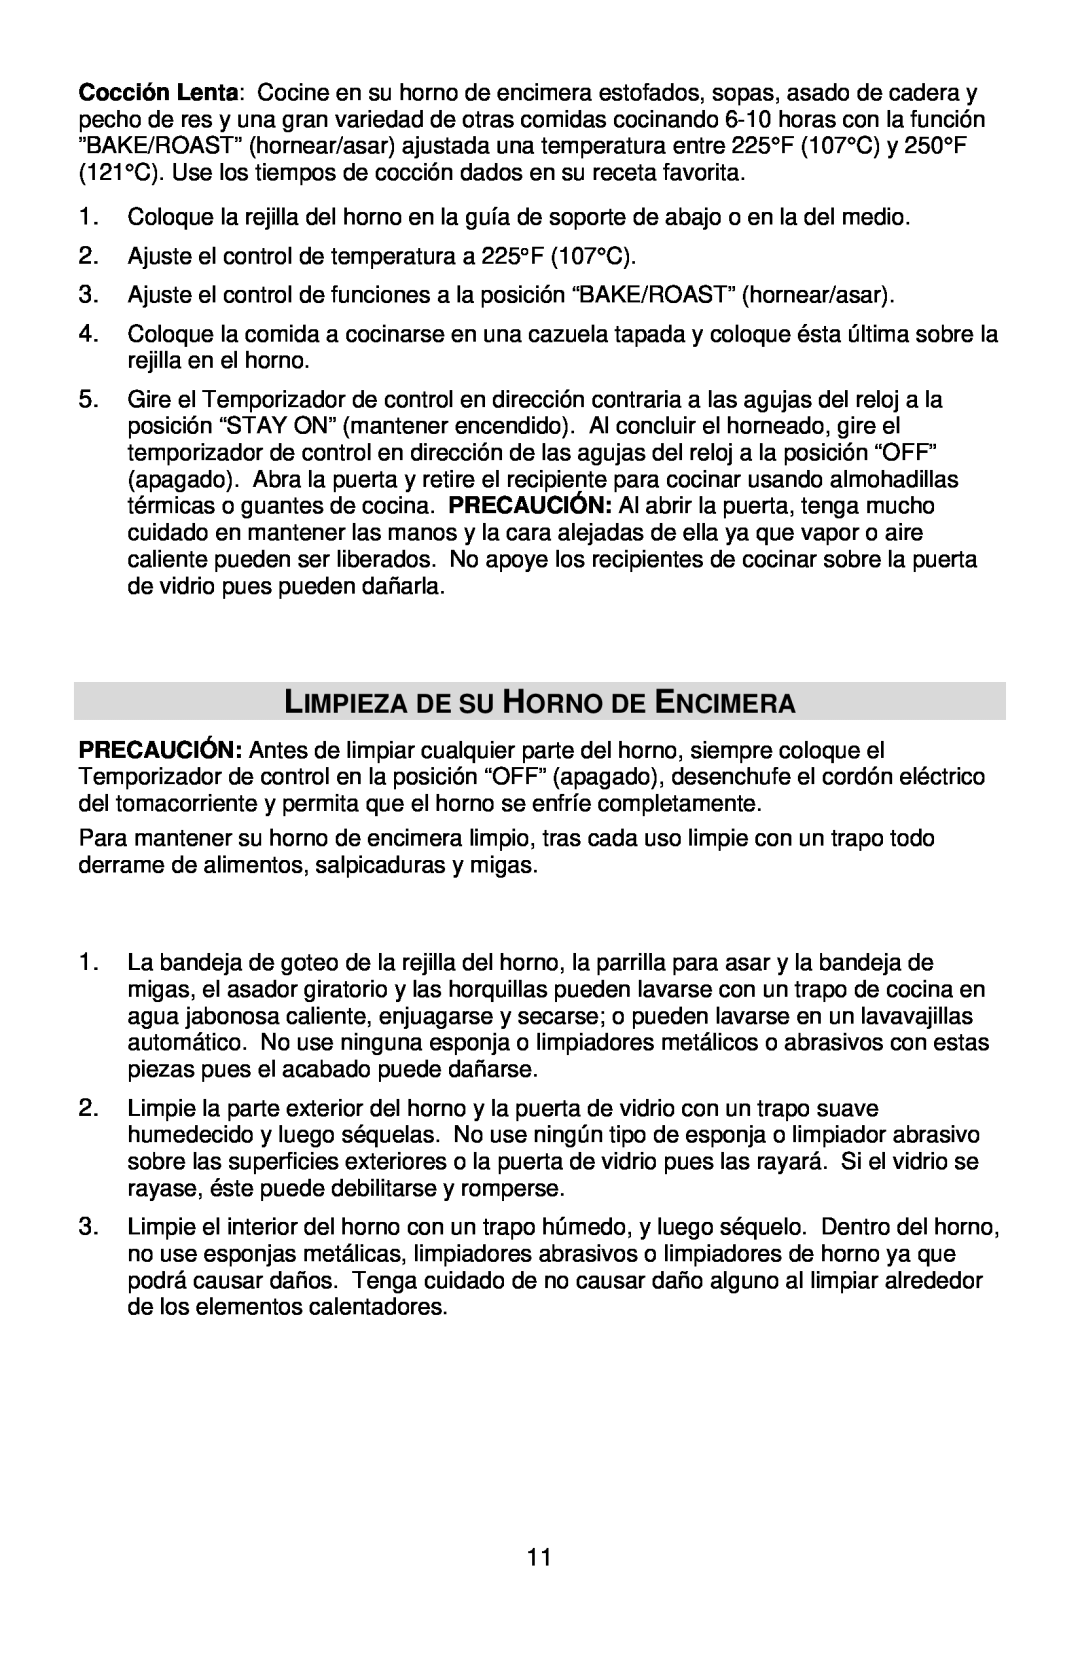 West Bend L5658B instruction manual Limpieza De Su Horno De Encimera 